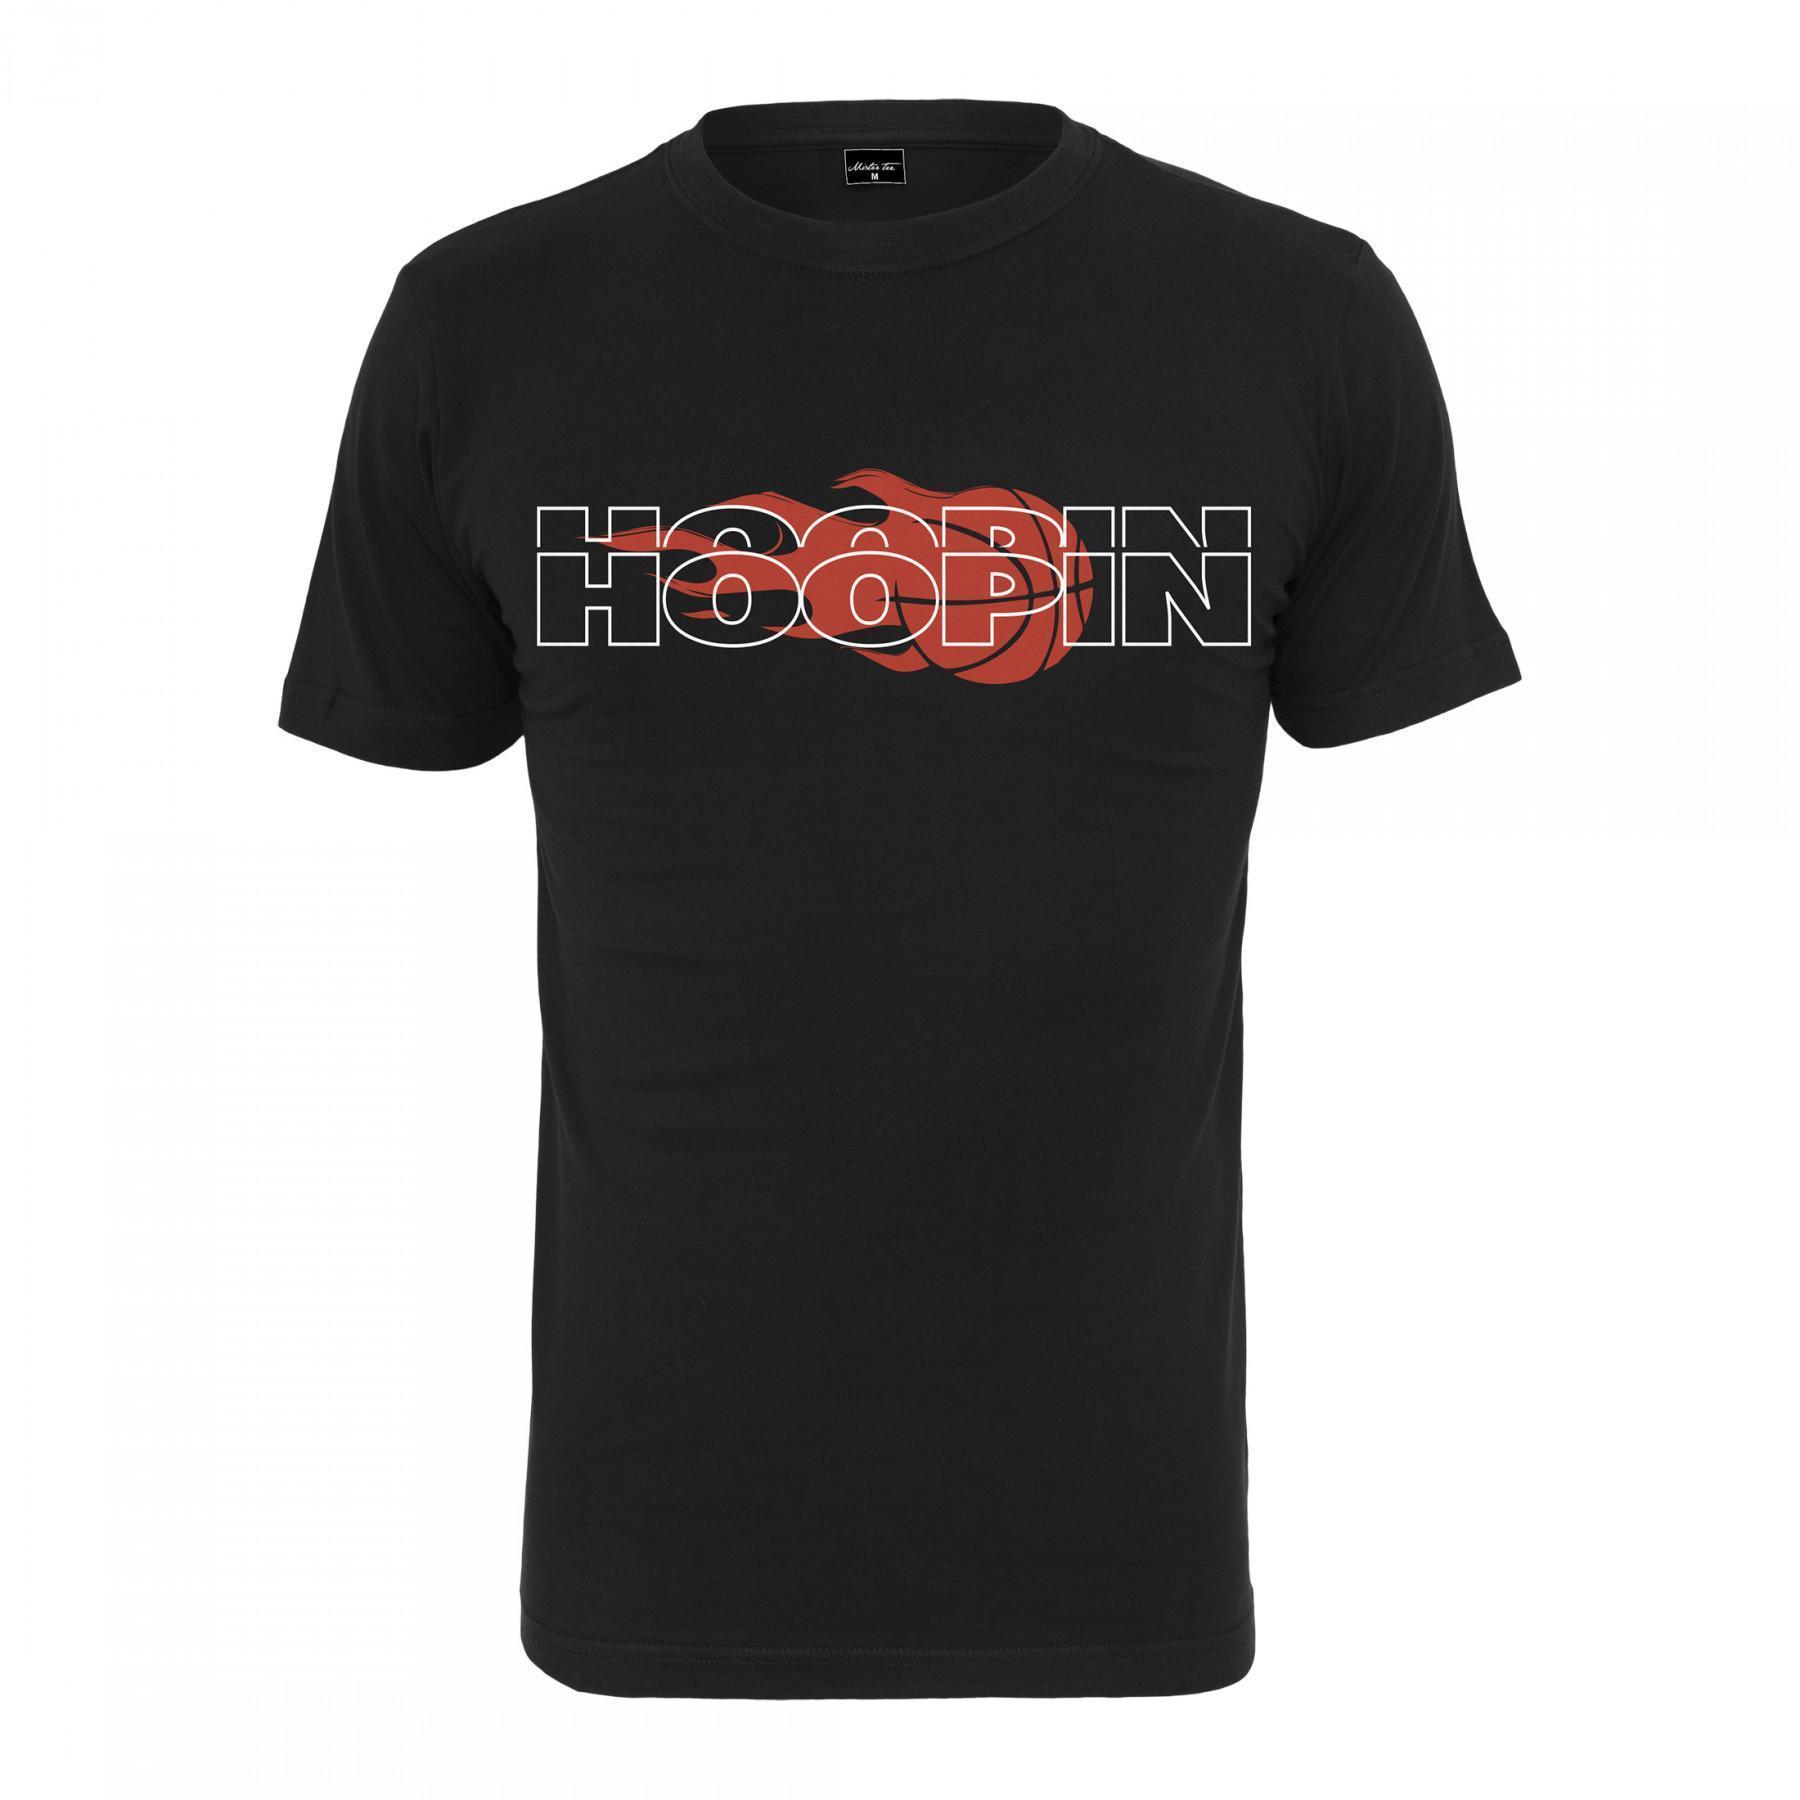 T-shirt Mister Tee hoopin